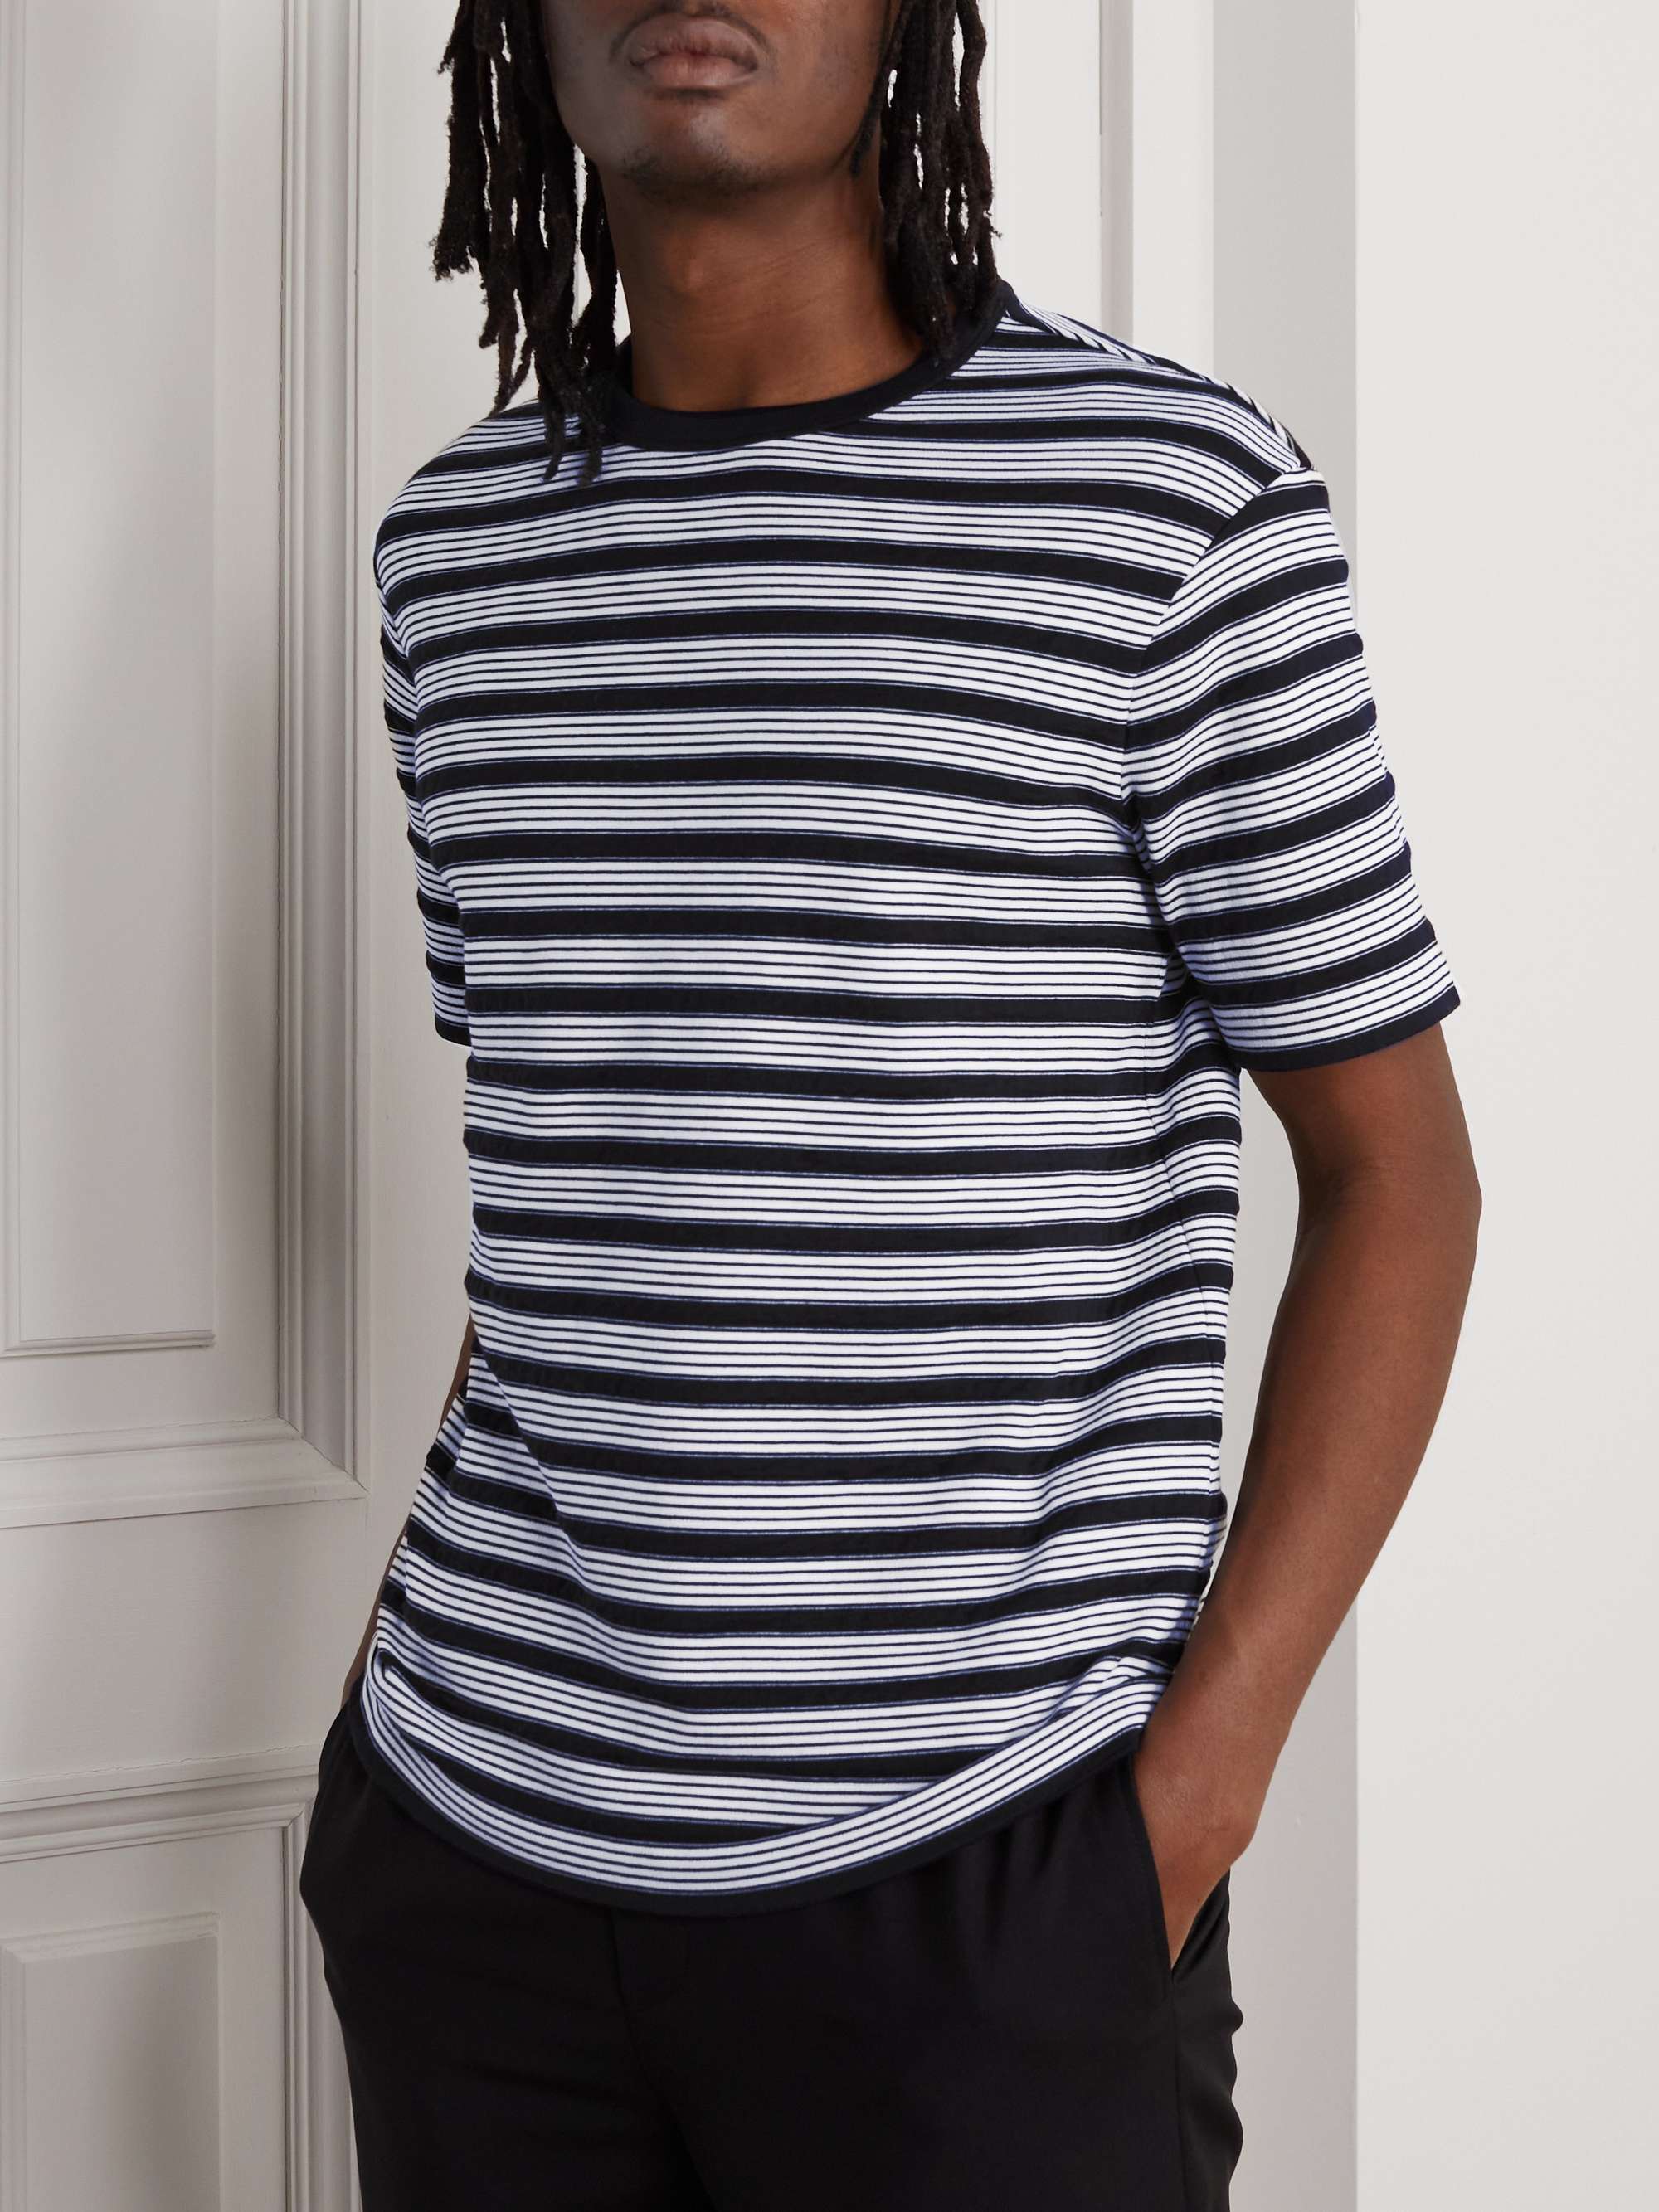 GIORGIO ARMANI Striped Cotton-Blend Jersey T-Shirt | MR PORTER